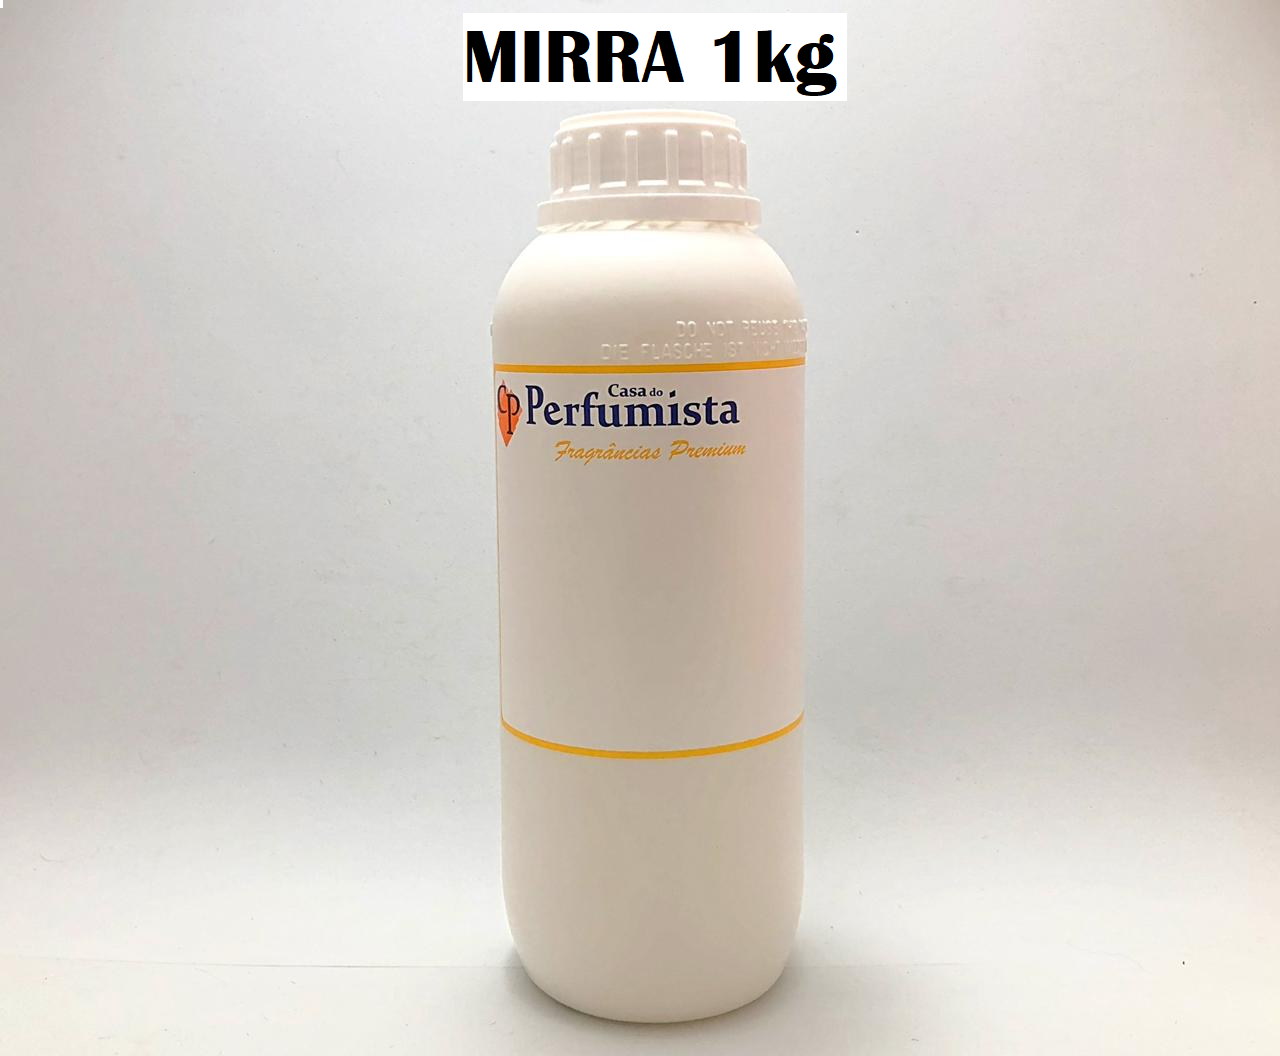 MIRRA REAL - 1kg